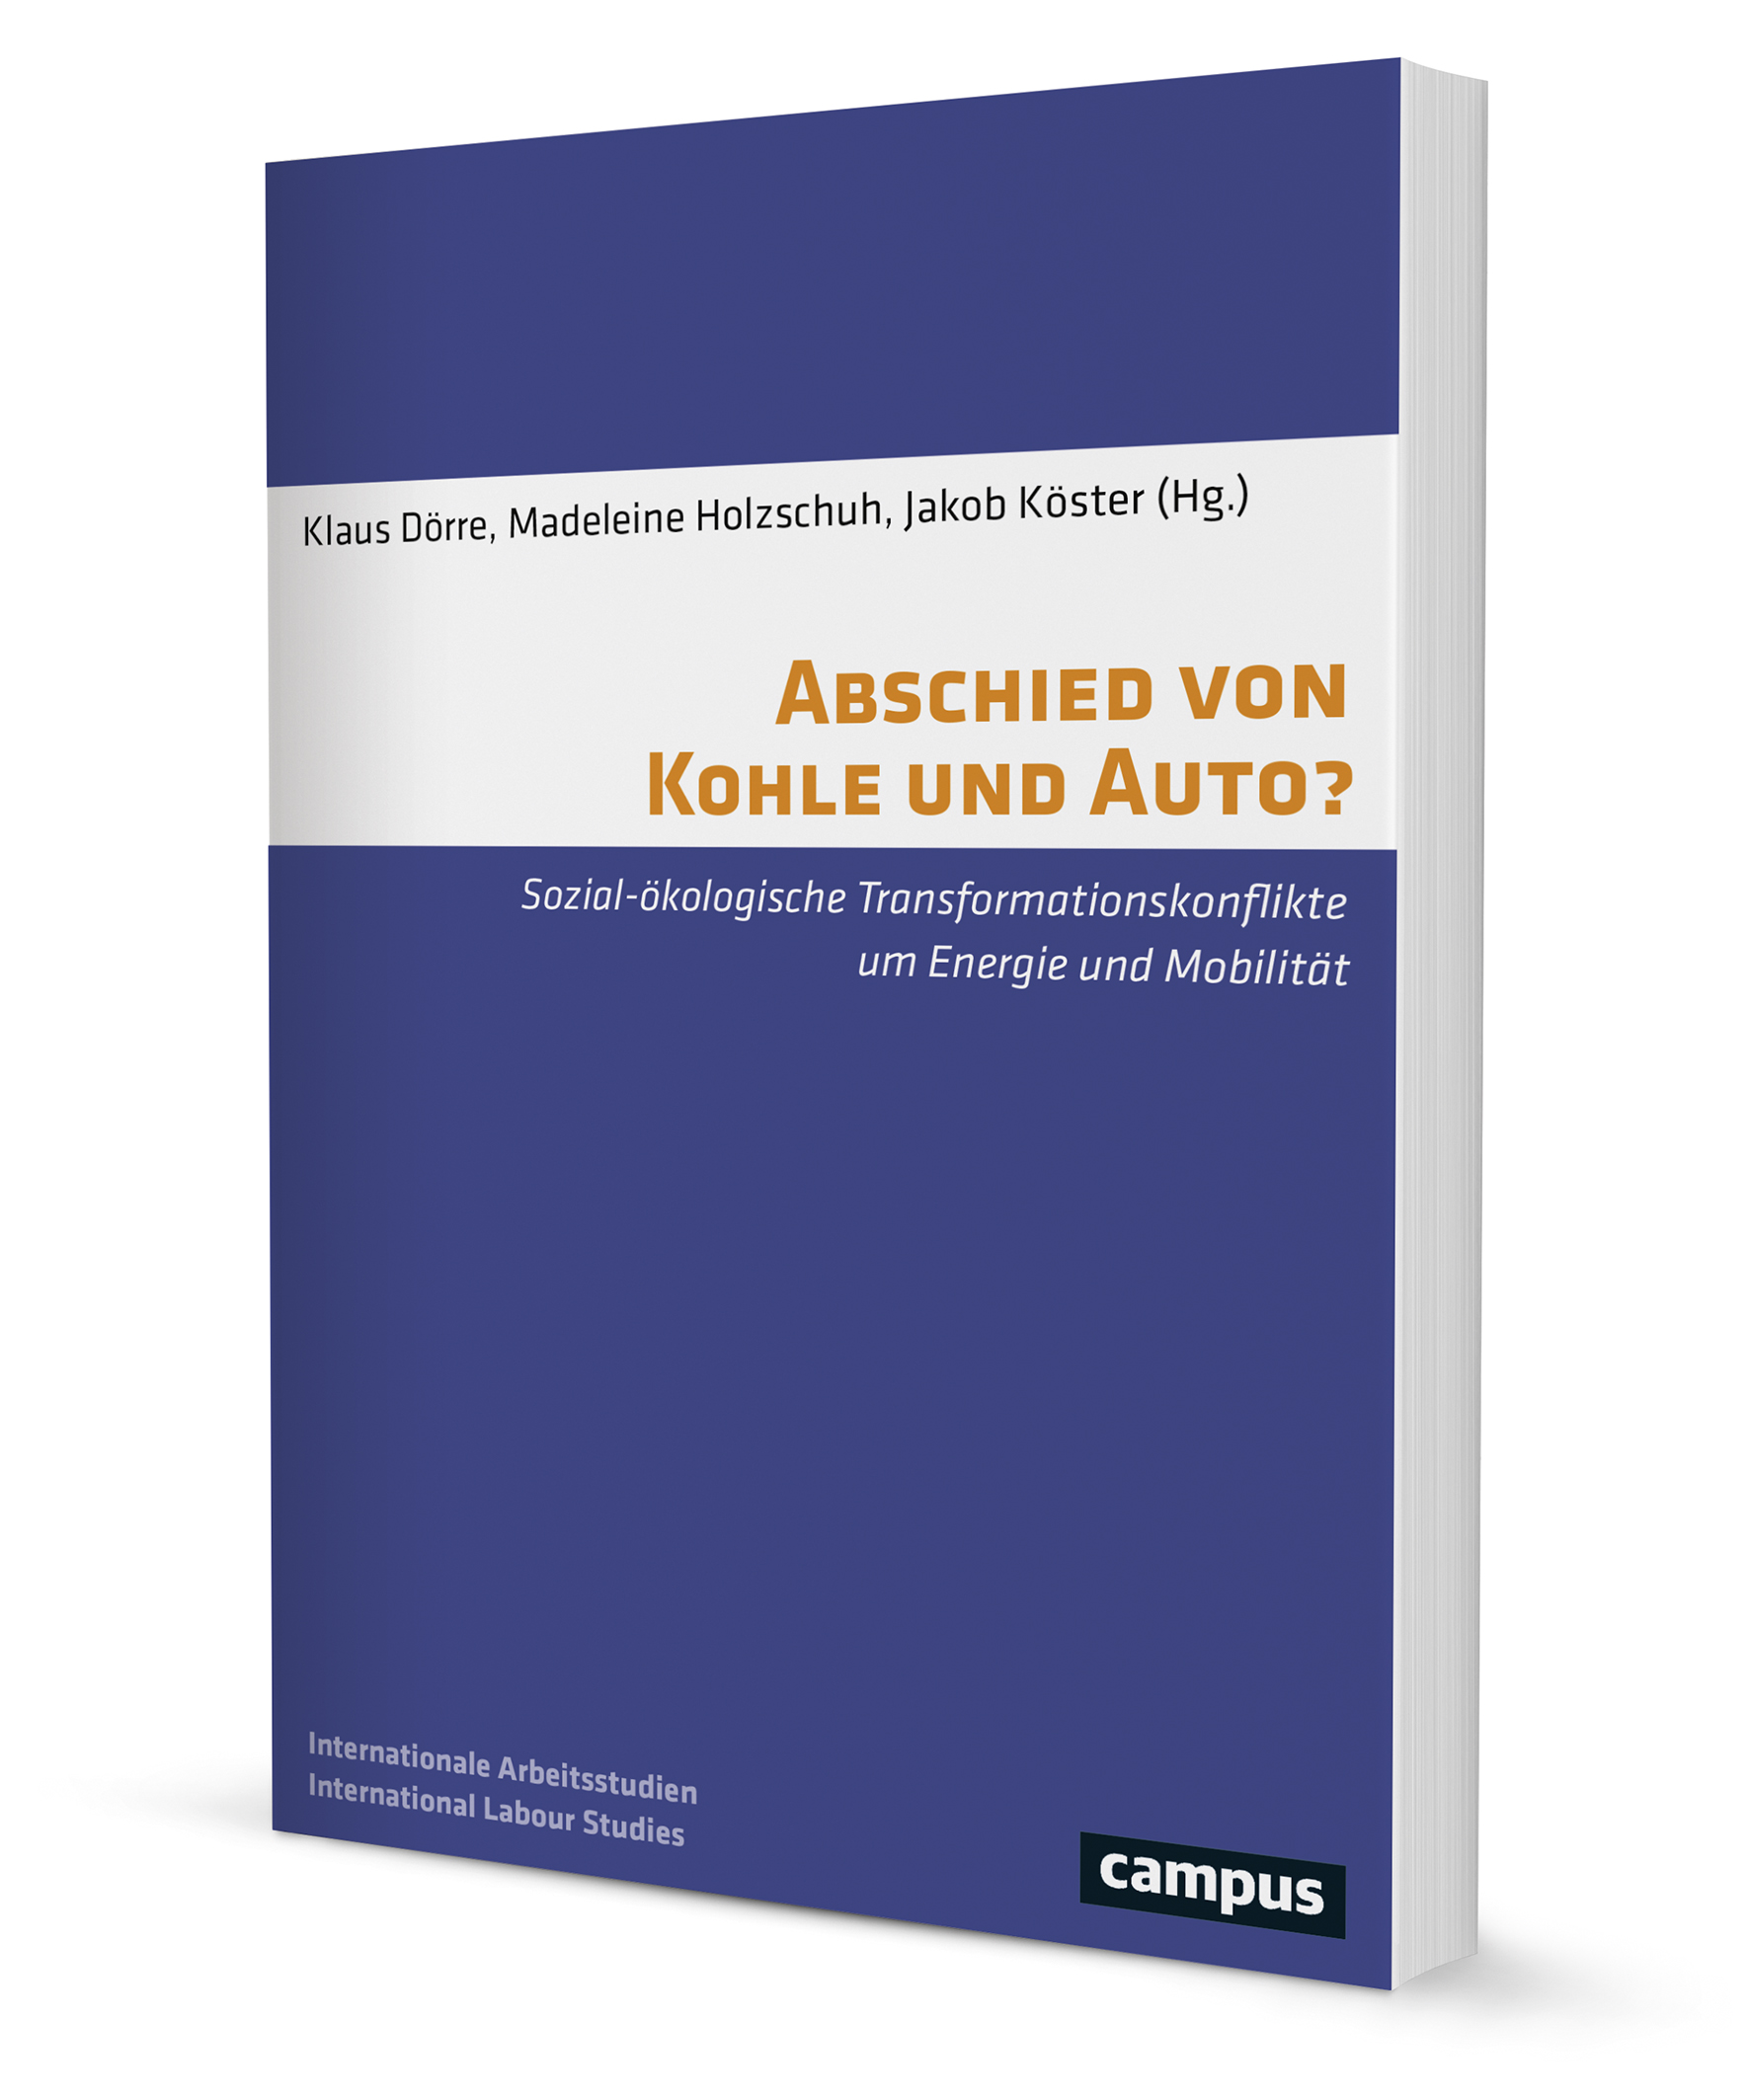 Abschied Von Kohle Und Auto Ein Buch Von Klaus Dorre Madeleine Holzschuh Jakob Koster Sittel Johanna Campus Verlag